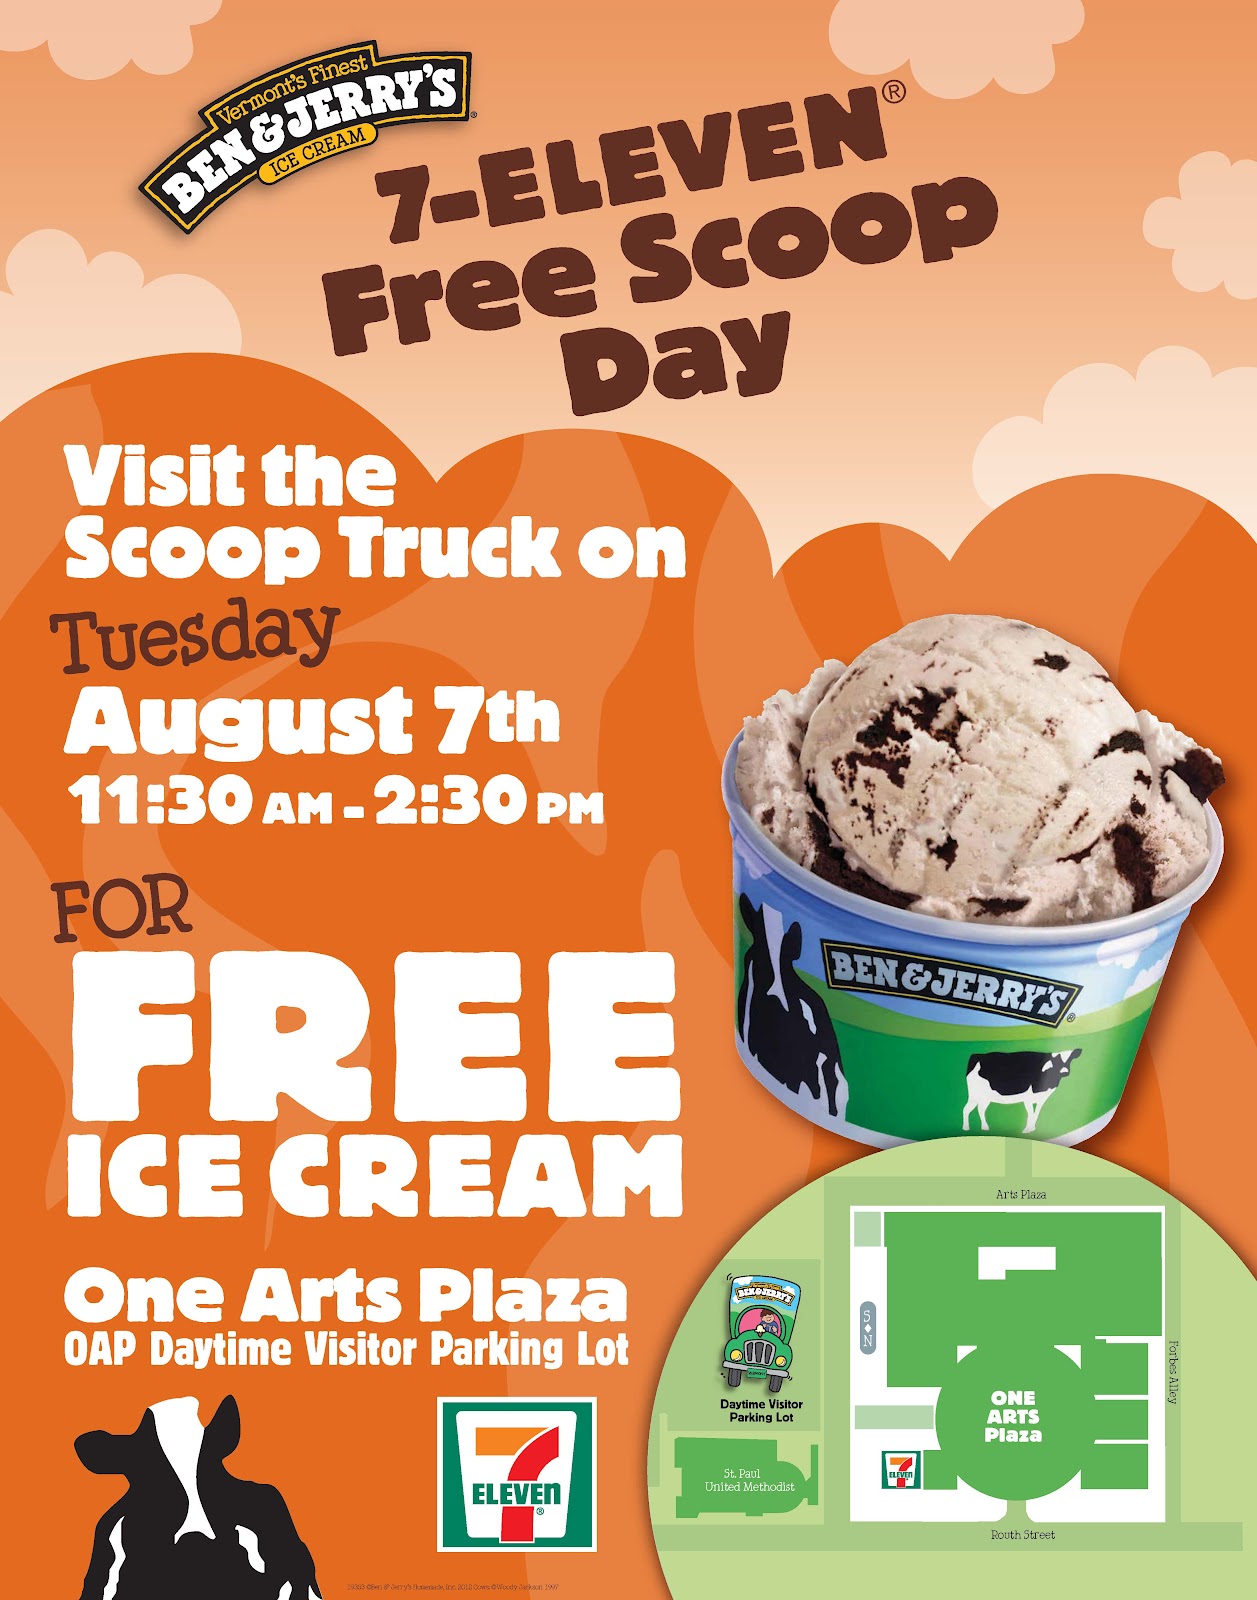 One Arts Plaza FREE Ice cream today